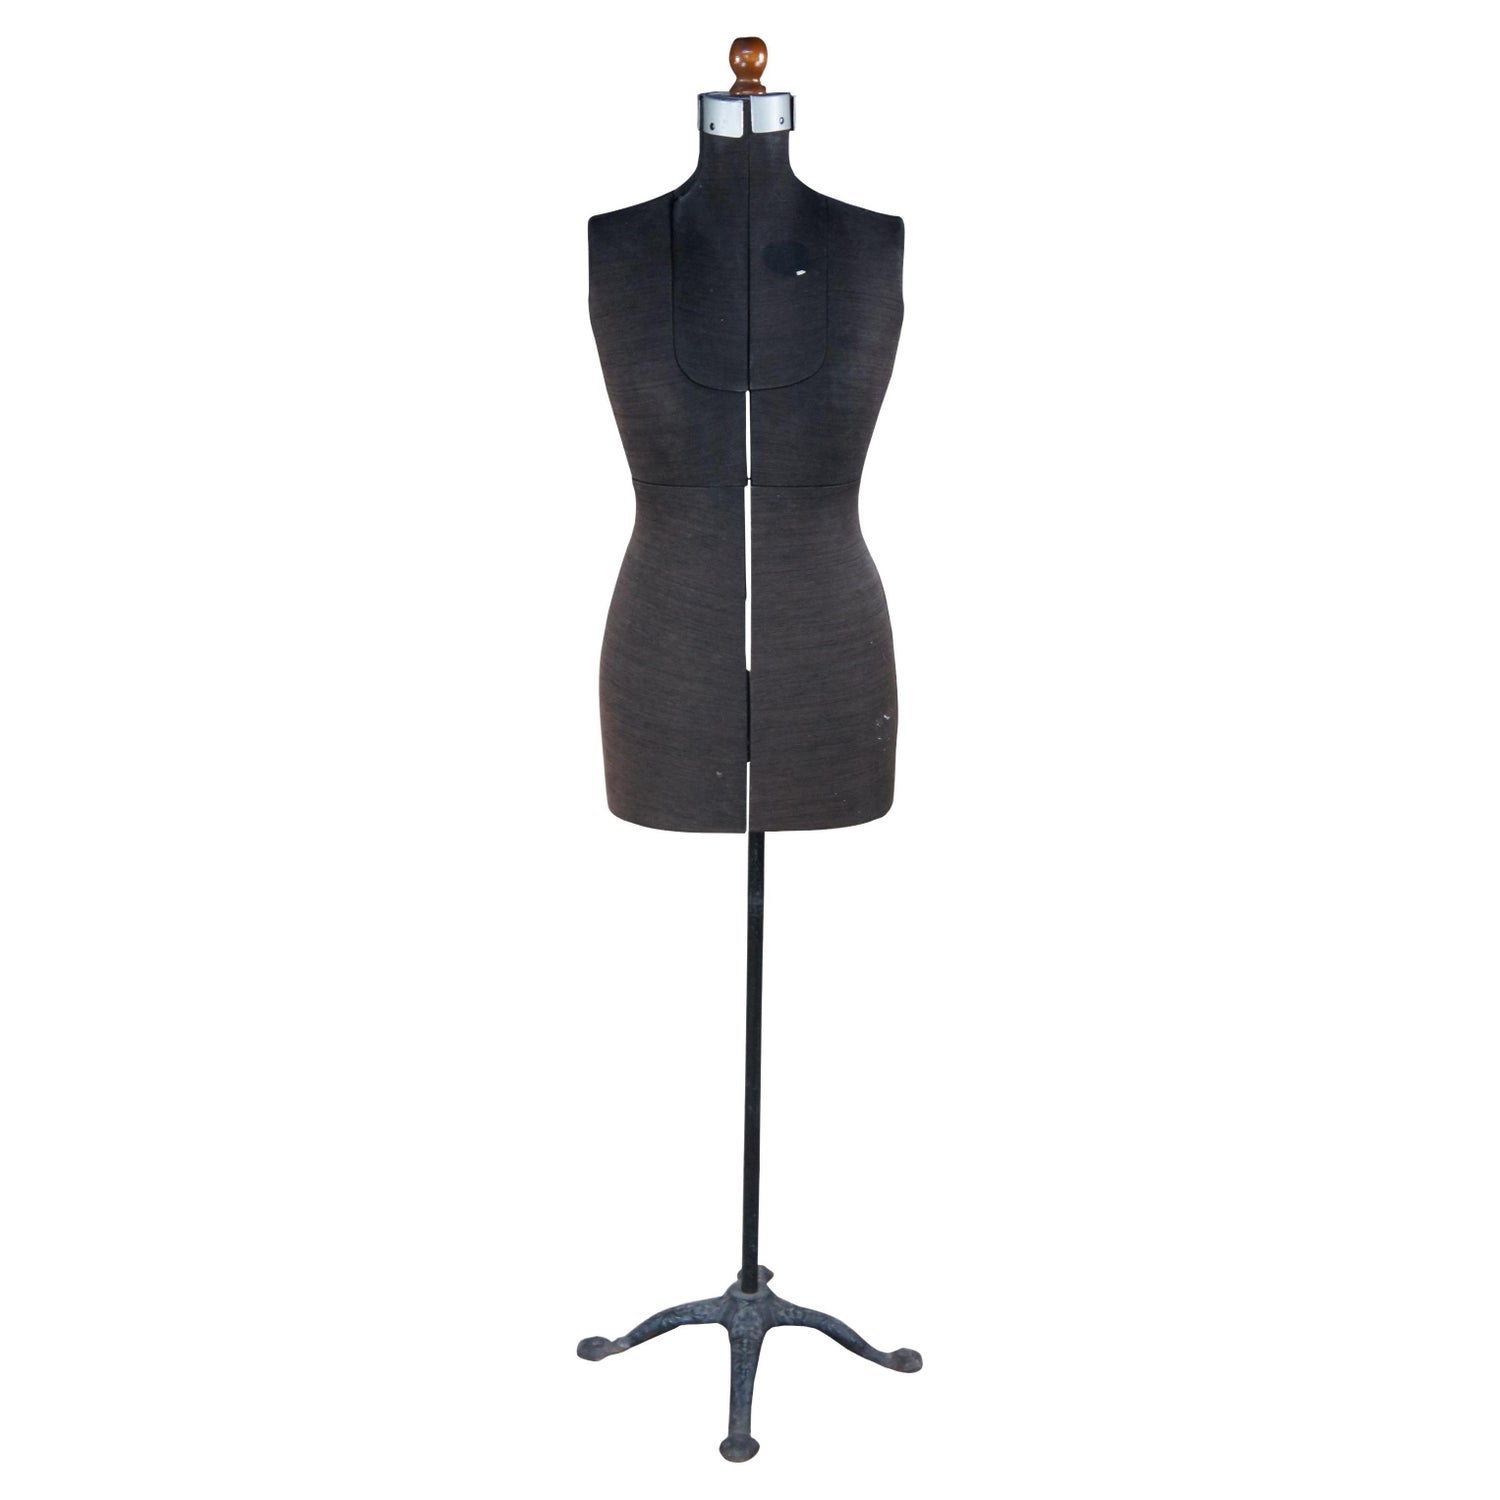 Sold at Auction: Vintage Metal Dress Mannequin/Hanger